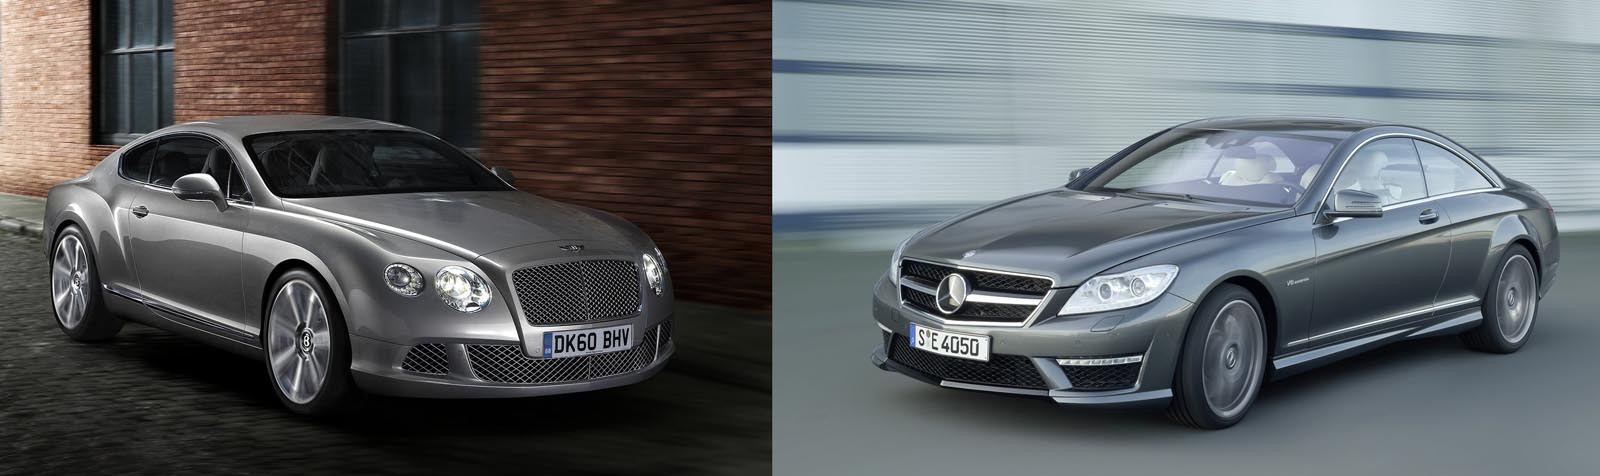 Bentley Continental GT vs. Mercedes CL facelift